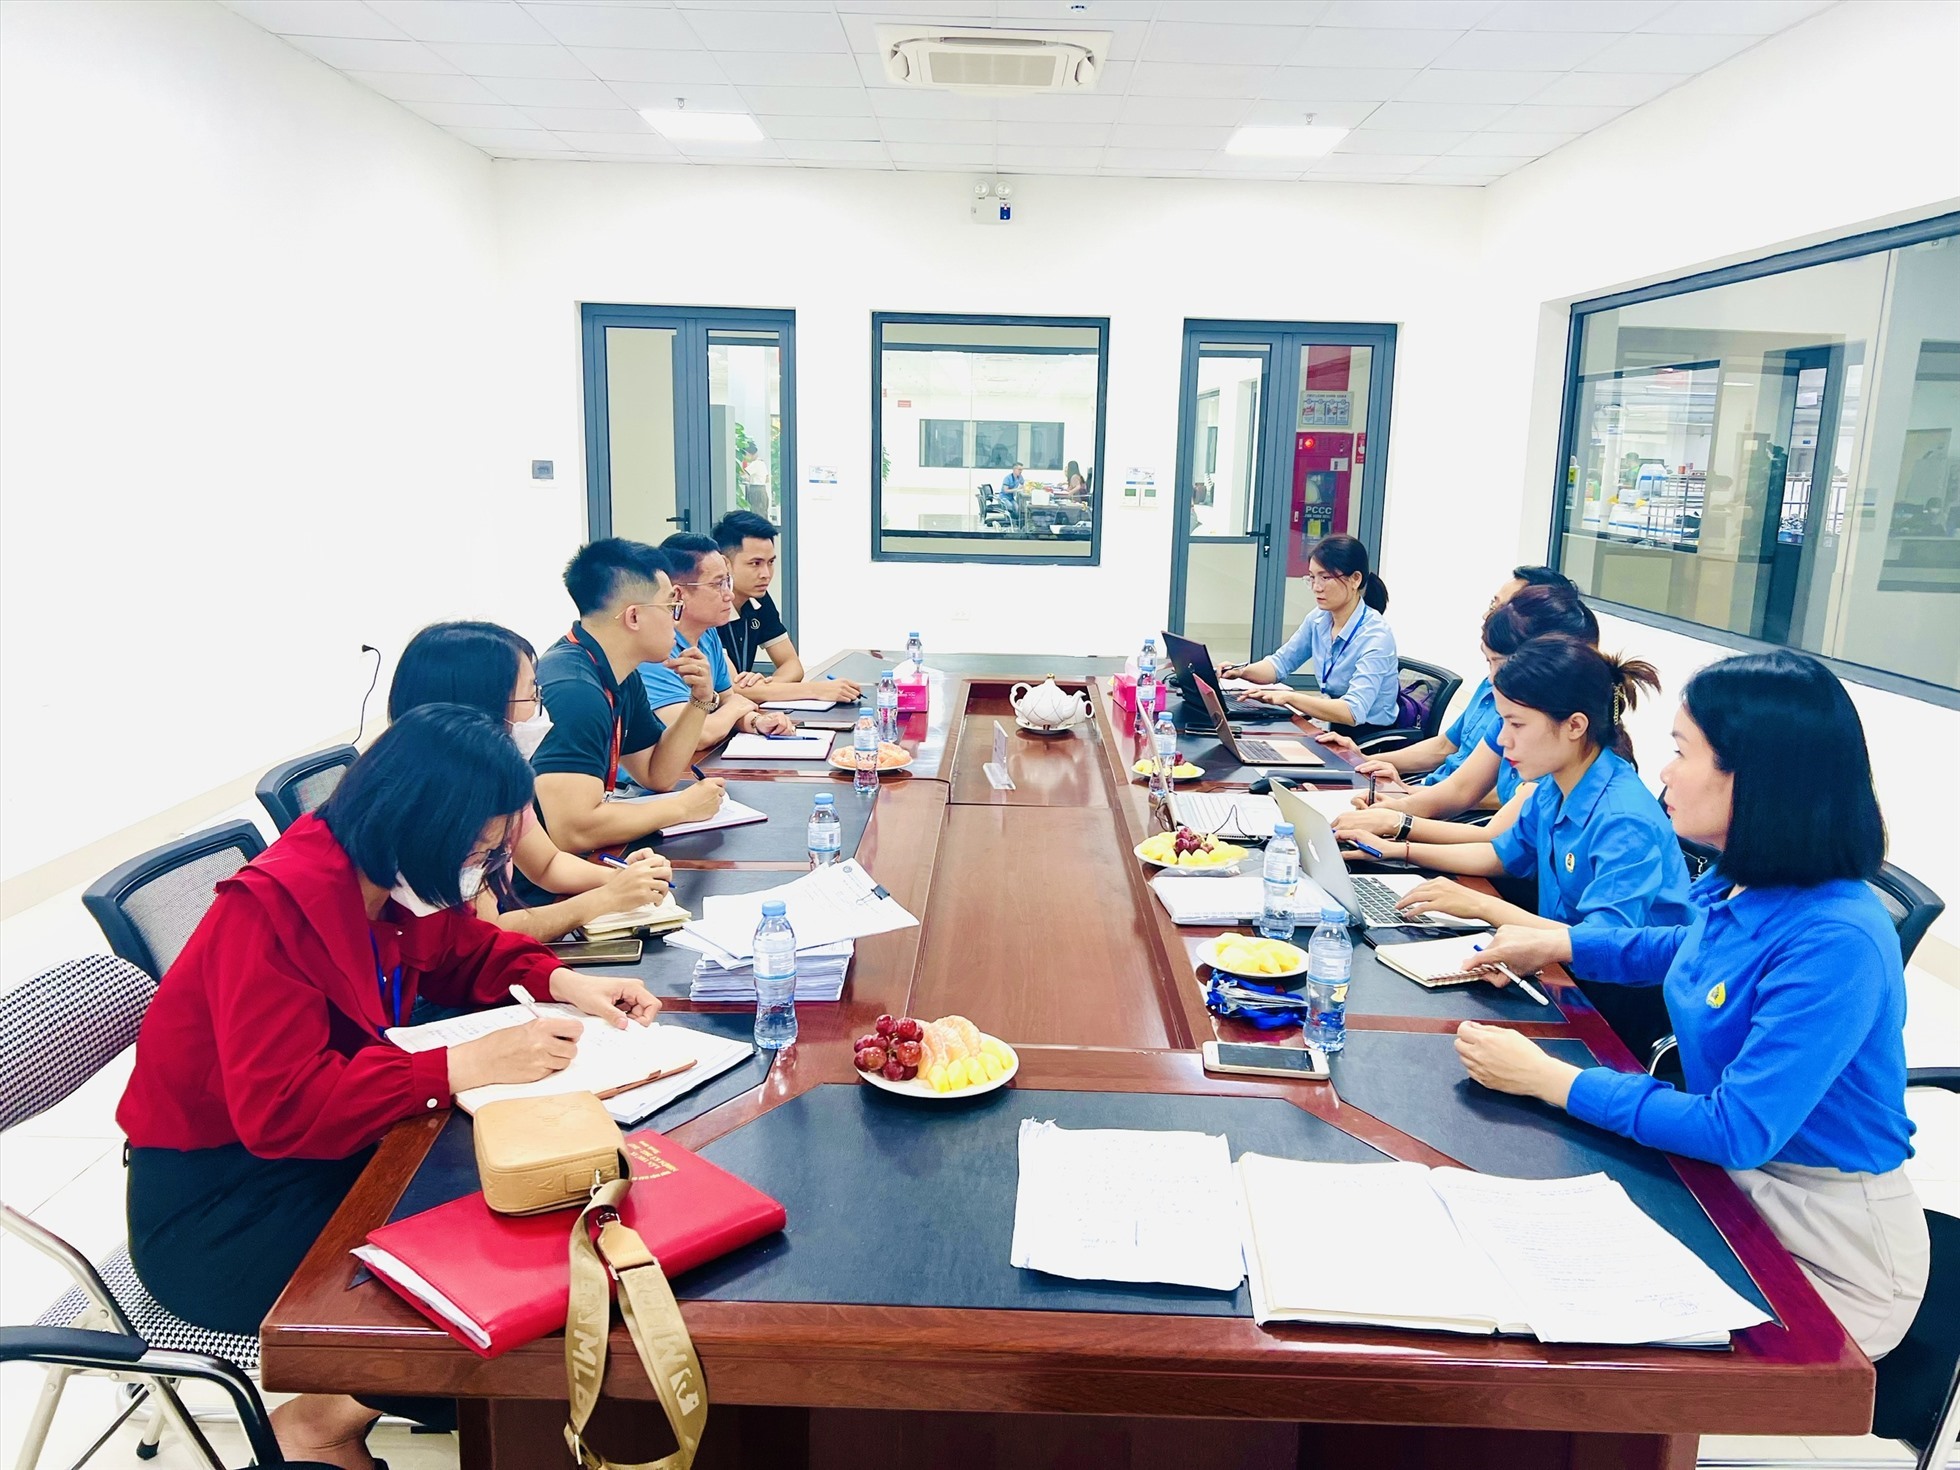 Cán bộ LĐLĐ tỉnh Nghệ An và LĐLĐ huyện Yên Thành phối hợp rà soát, lập hồ sơ hỗ trợ công nhân lao động bị giảm giờ làm và mất việc làm. Ảnh: Hải Đăng